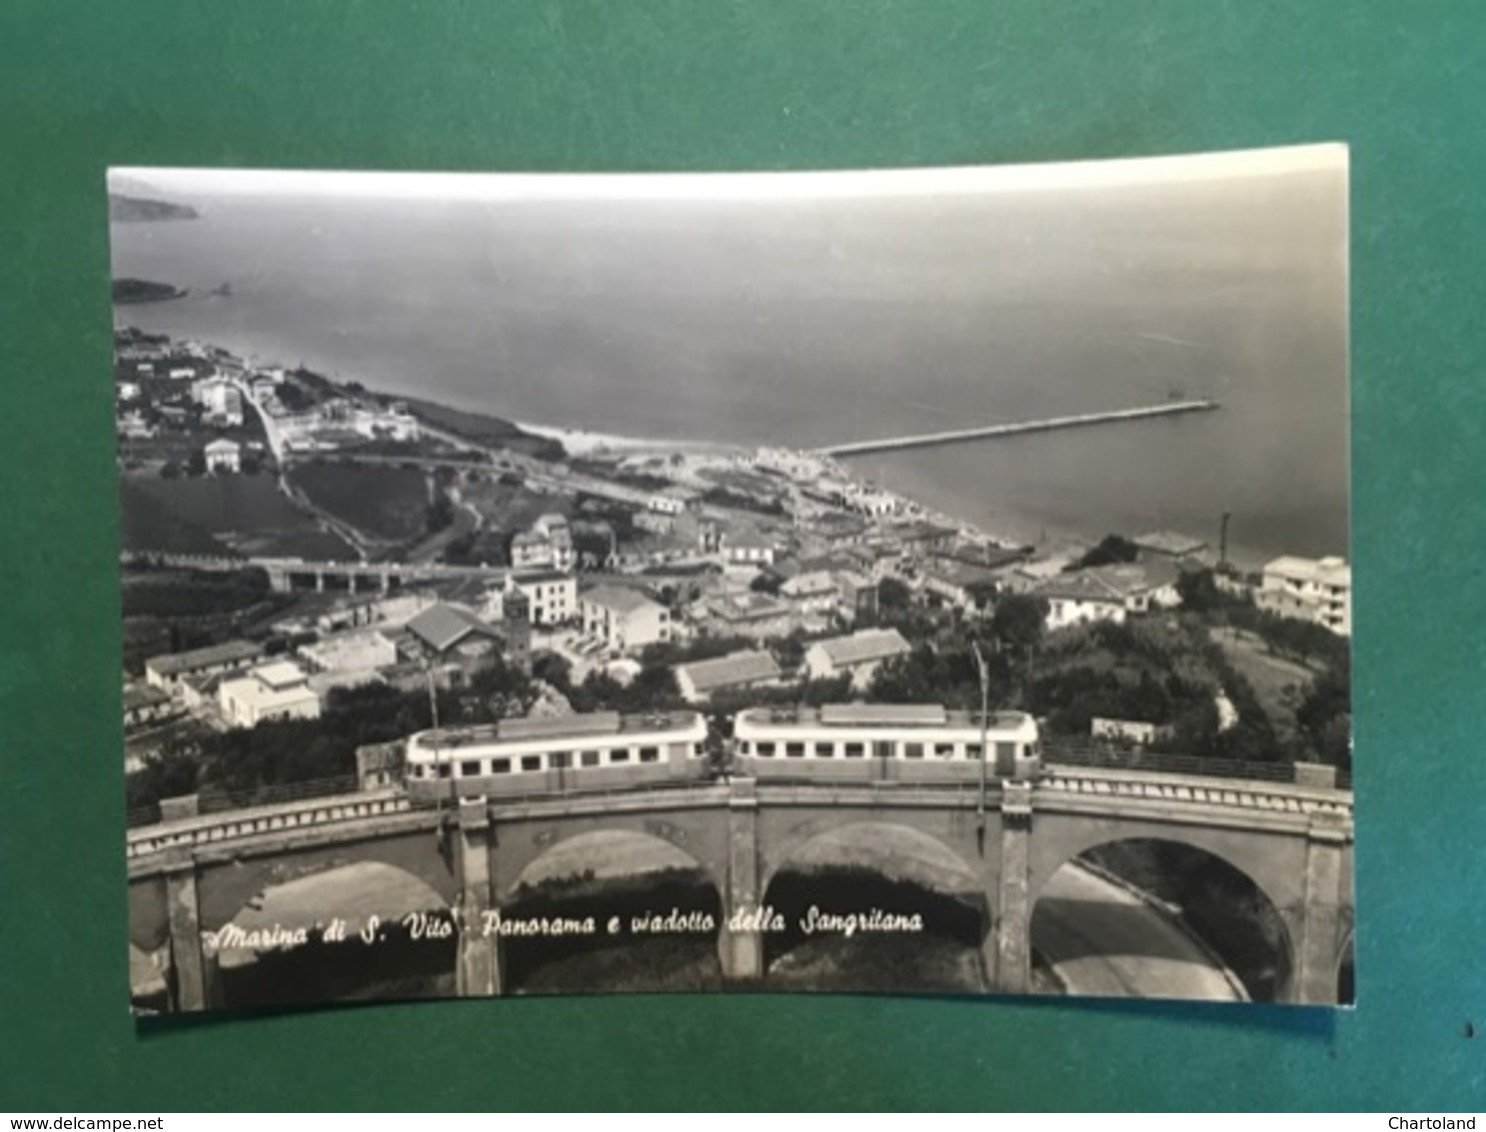 Cartolina Marina Di S. Vito - Panorama E Viadotto Della Sangritana - 1965 - Chieti